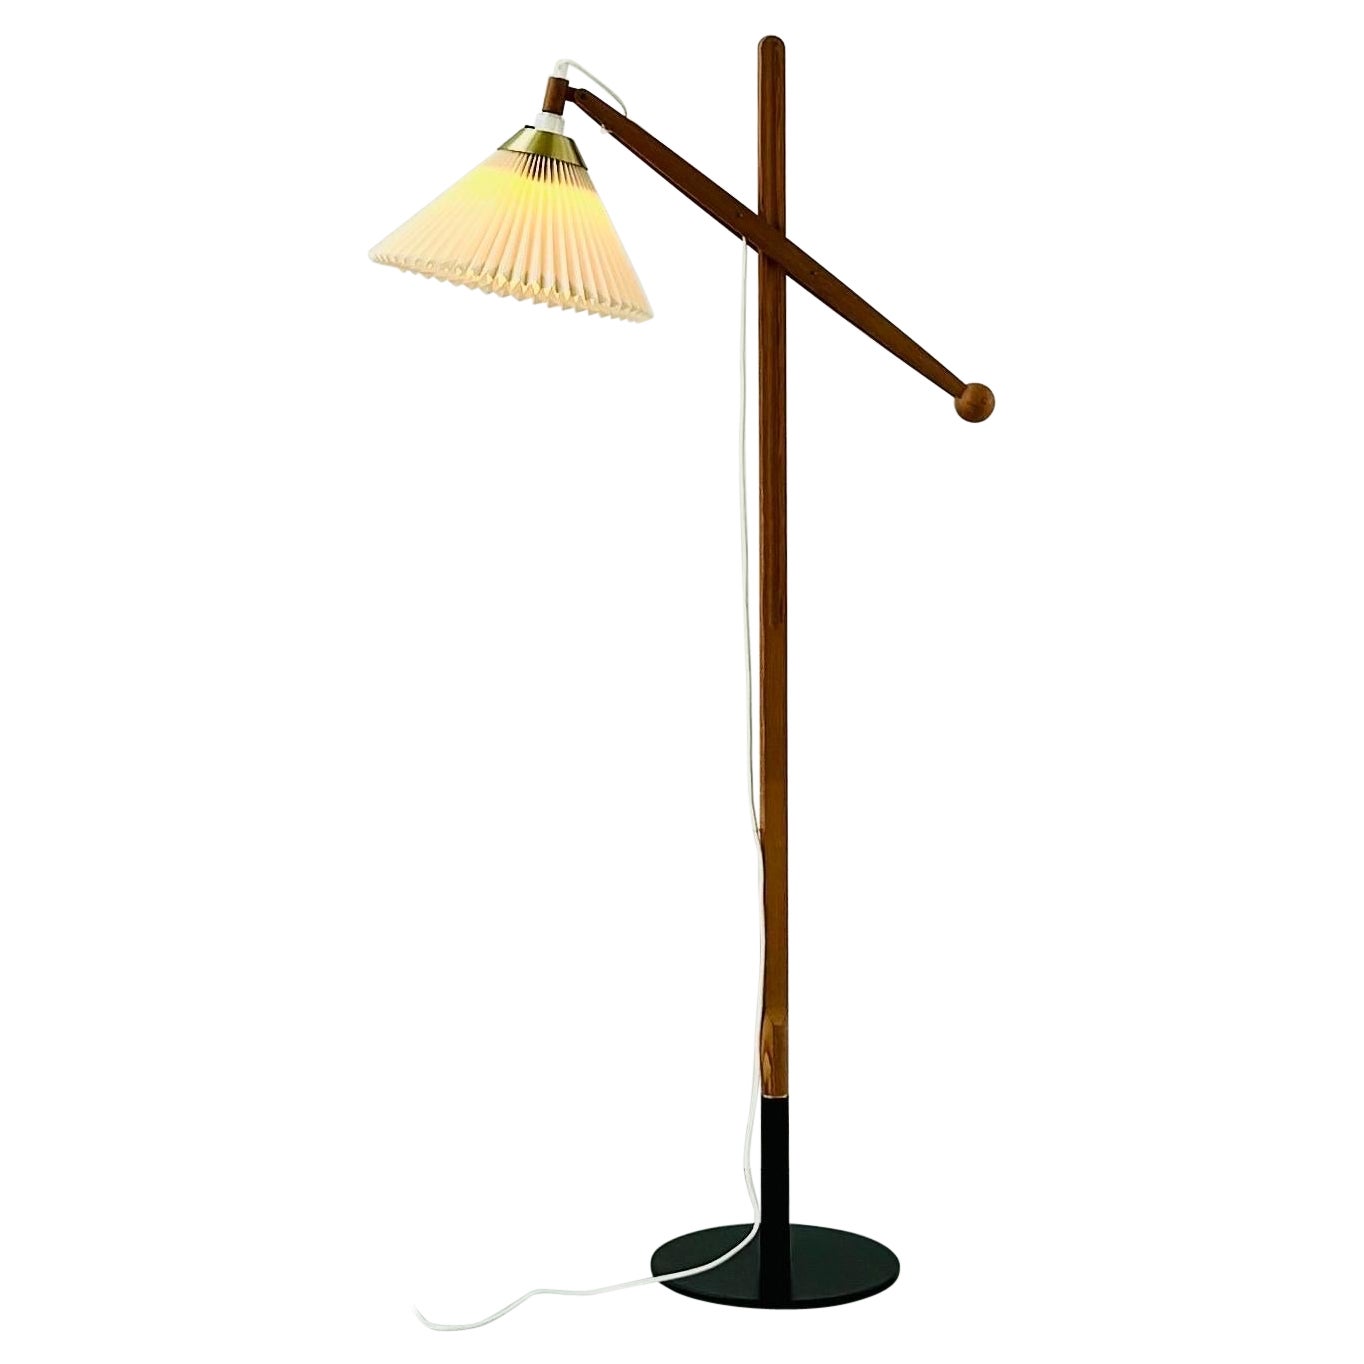 Danish Modern Le Klint Floor Lamp Designed by Vilhelm Wohlert, 1960s, Denmark